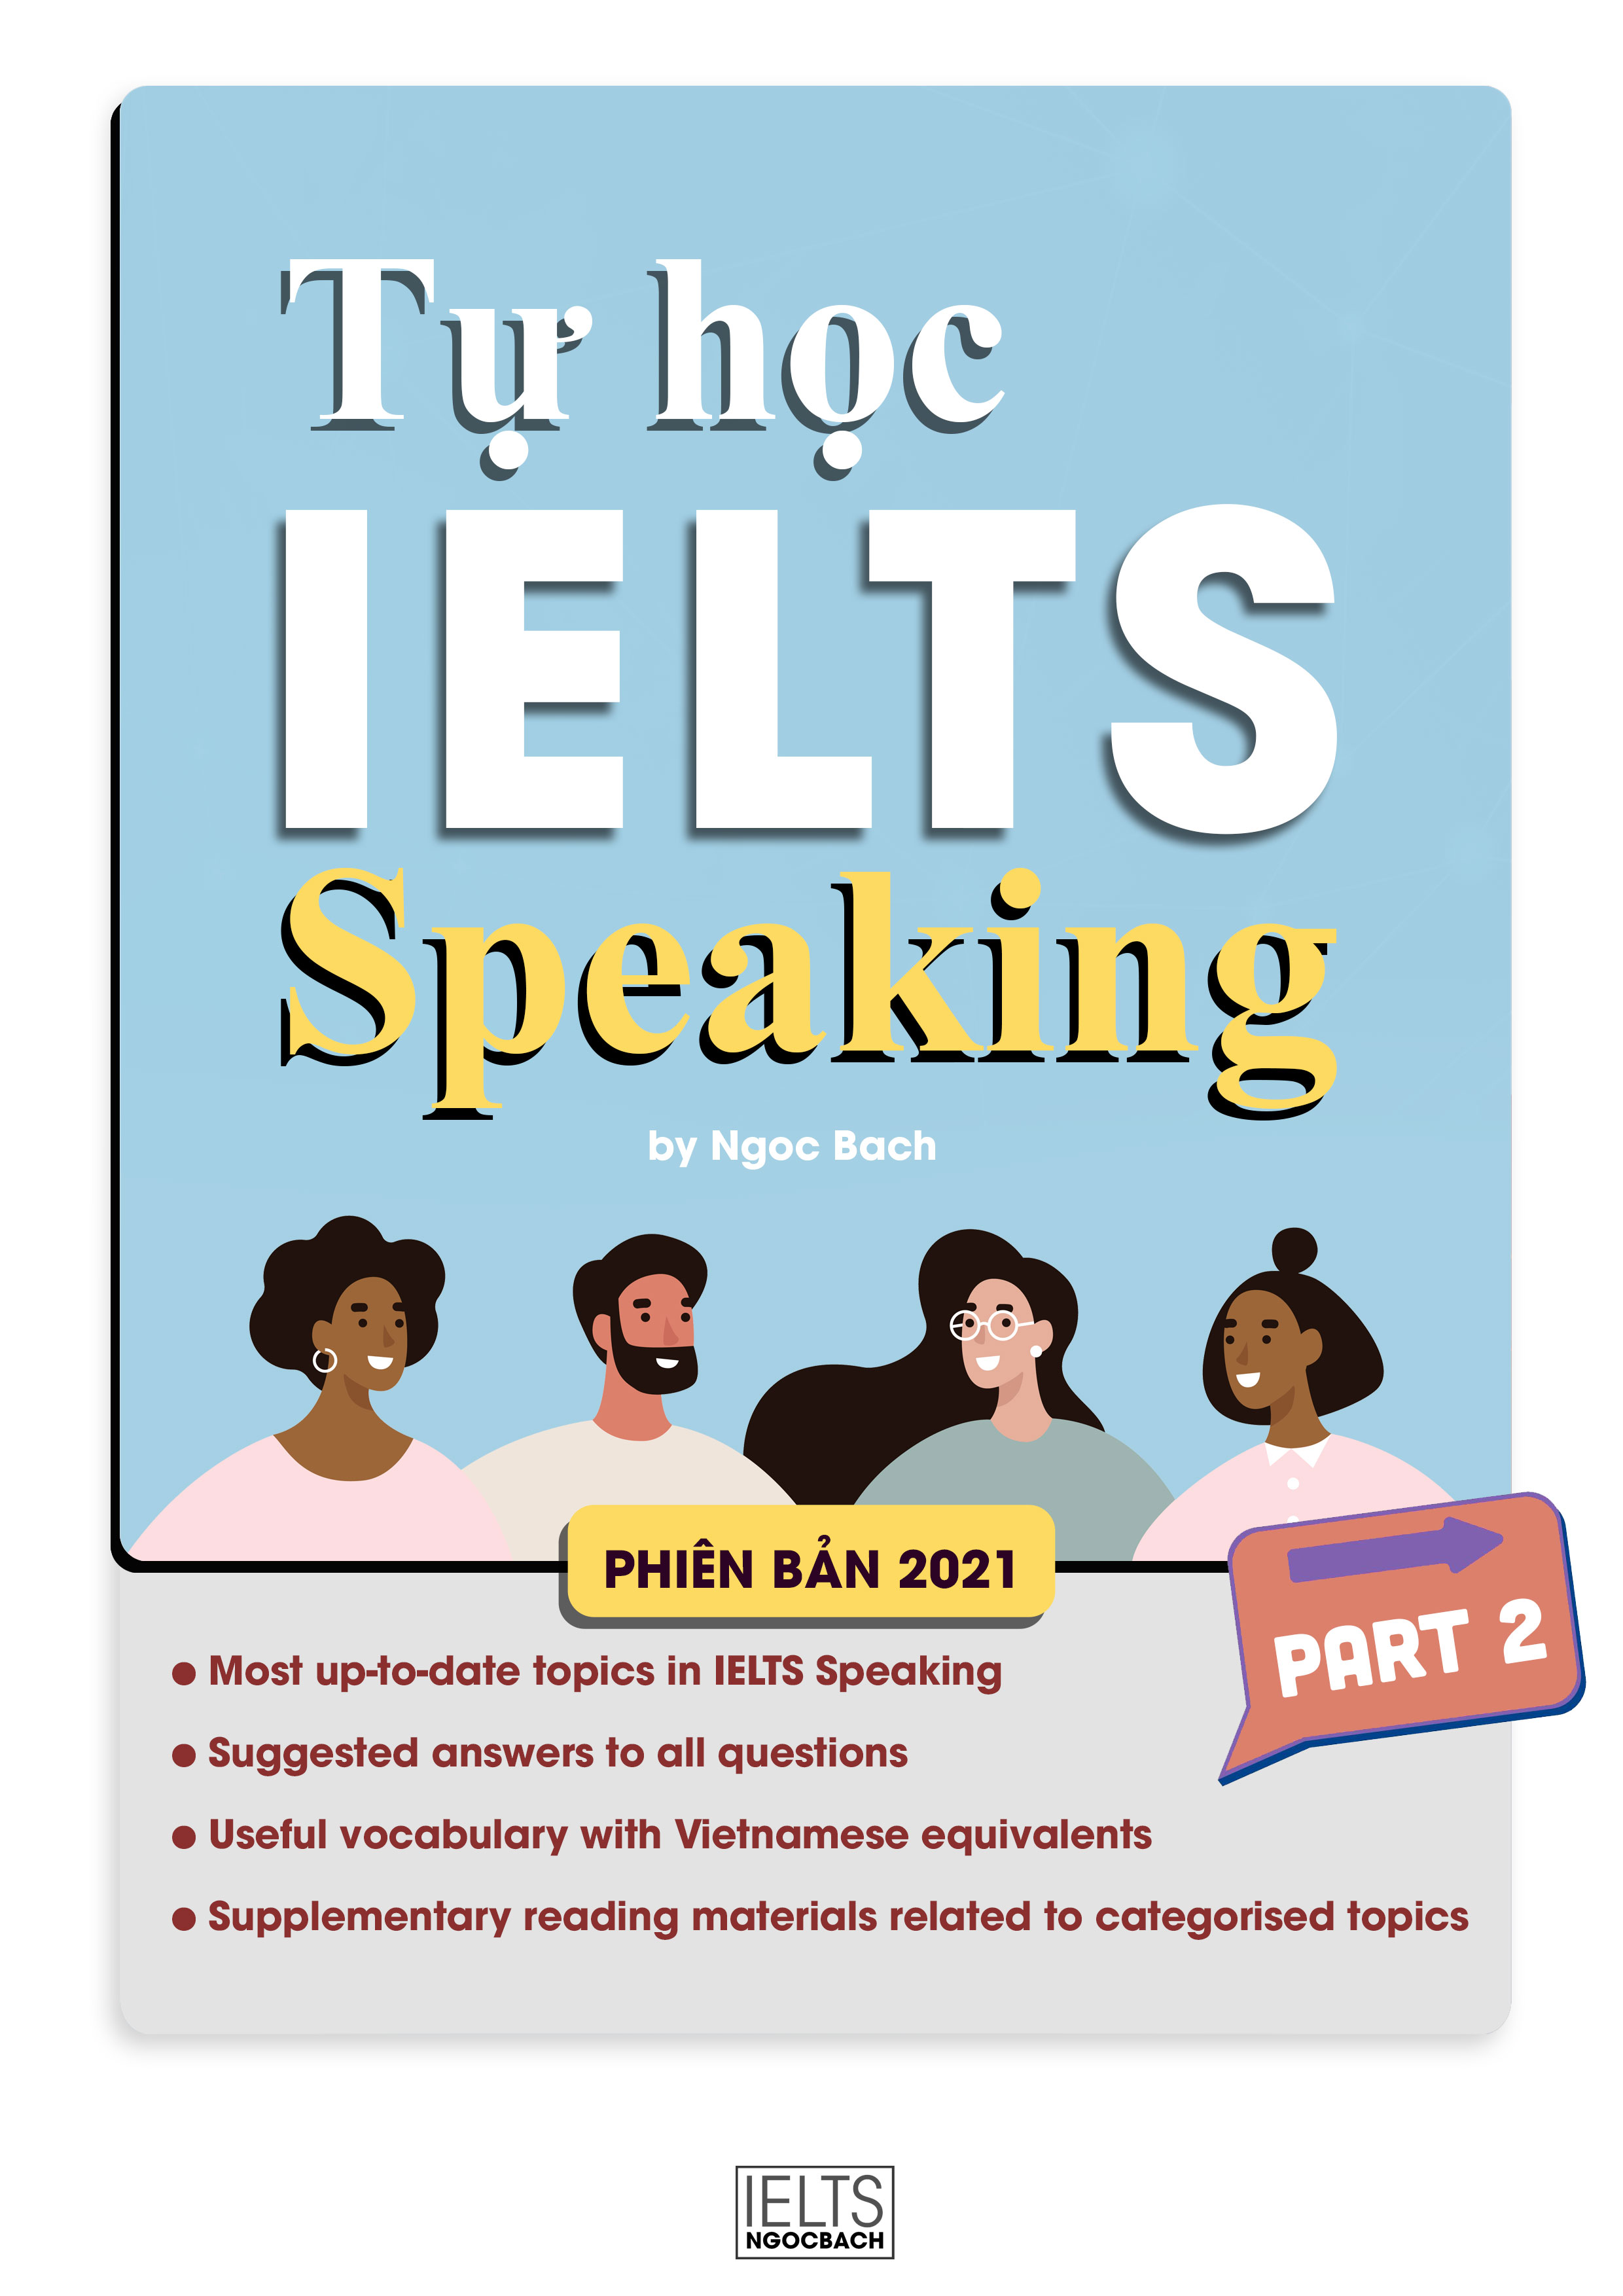 Speaking full. IELTS speaking 2021. IELTS speaking 9. IELTS speaking Cards. IELTS speaking 2021 logo.